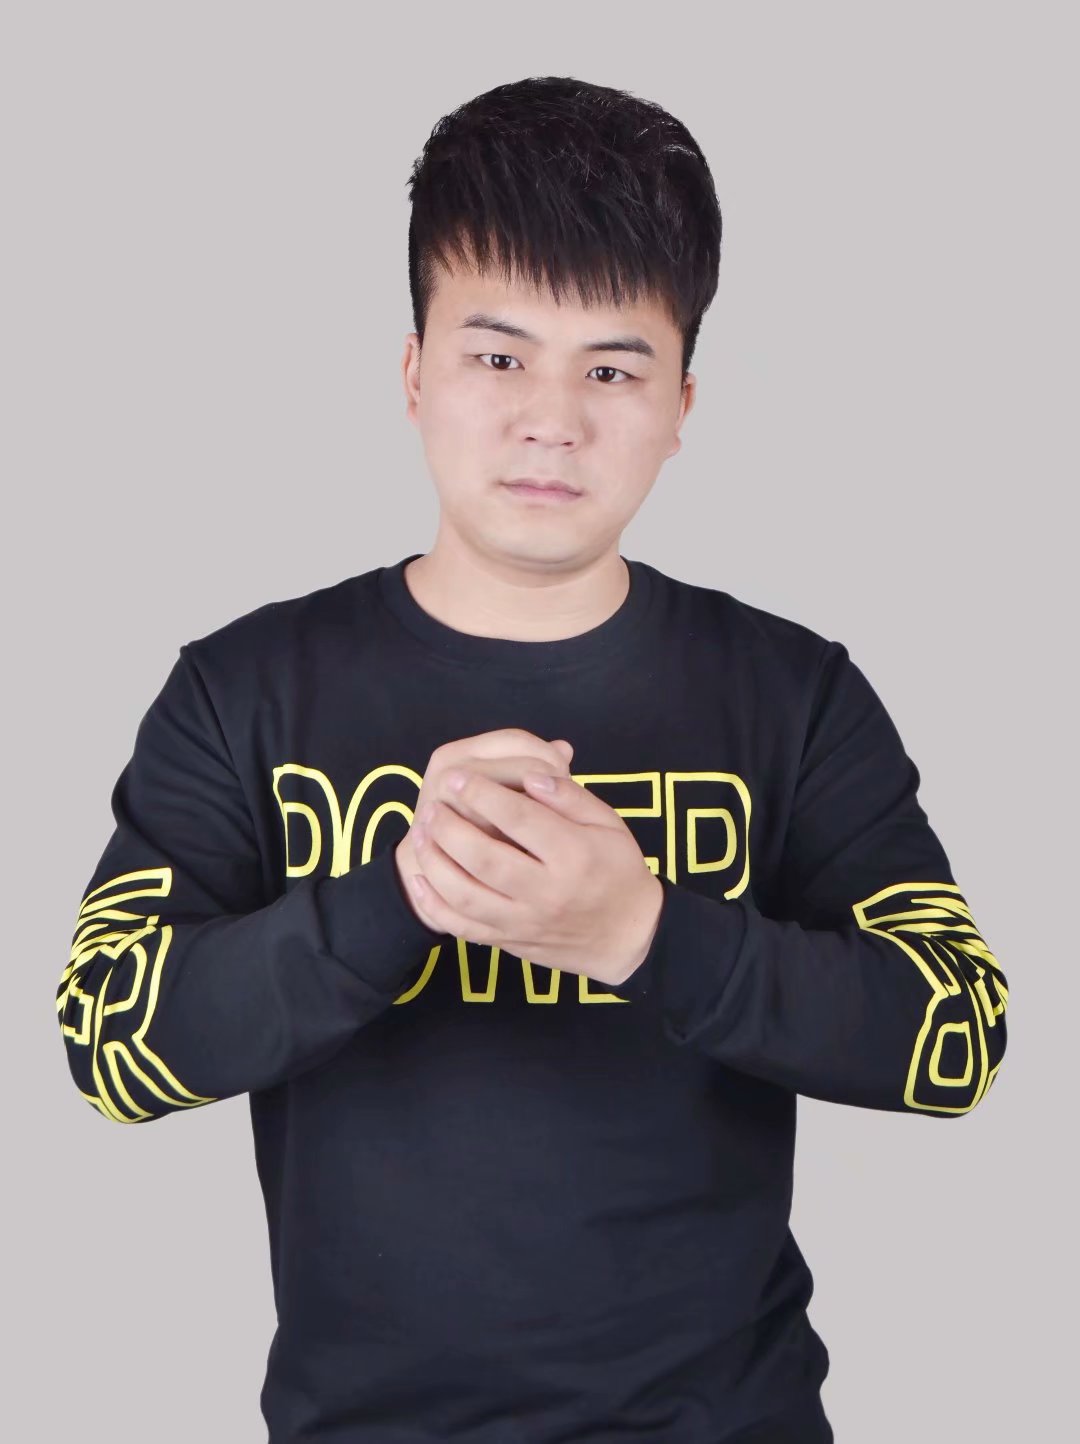 华语男歌手“董晓松”磁性歌声